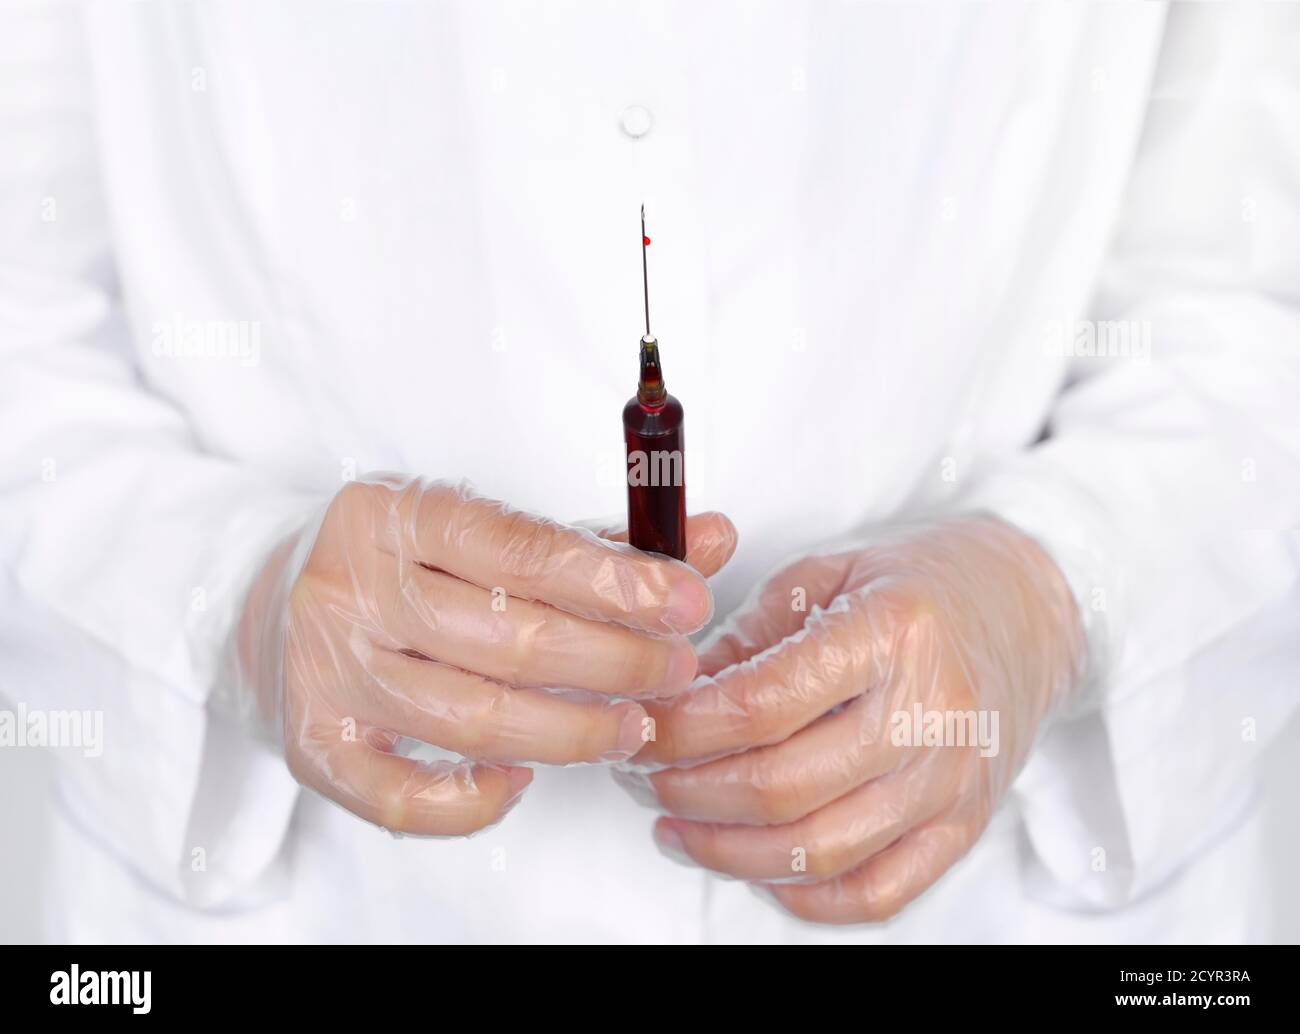 La main du médecin dans un gant en latex tient une seringue pleine de sang  pour analyse ou transfusion sanguine Photo Stock - Alamy